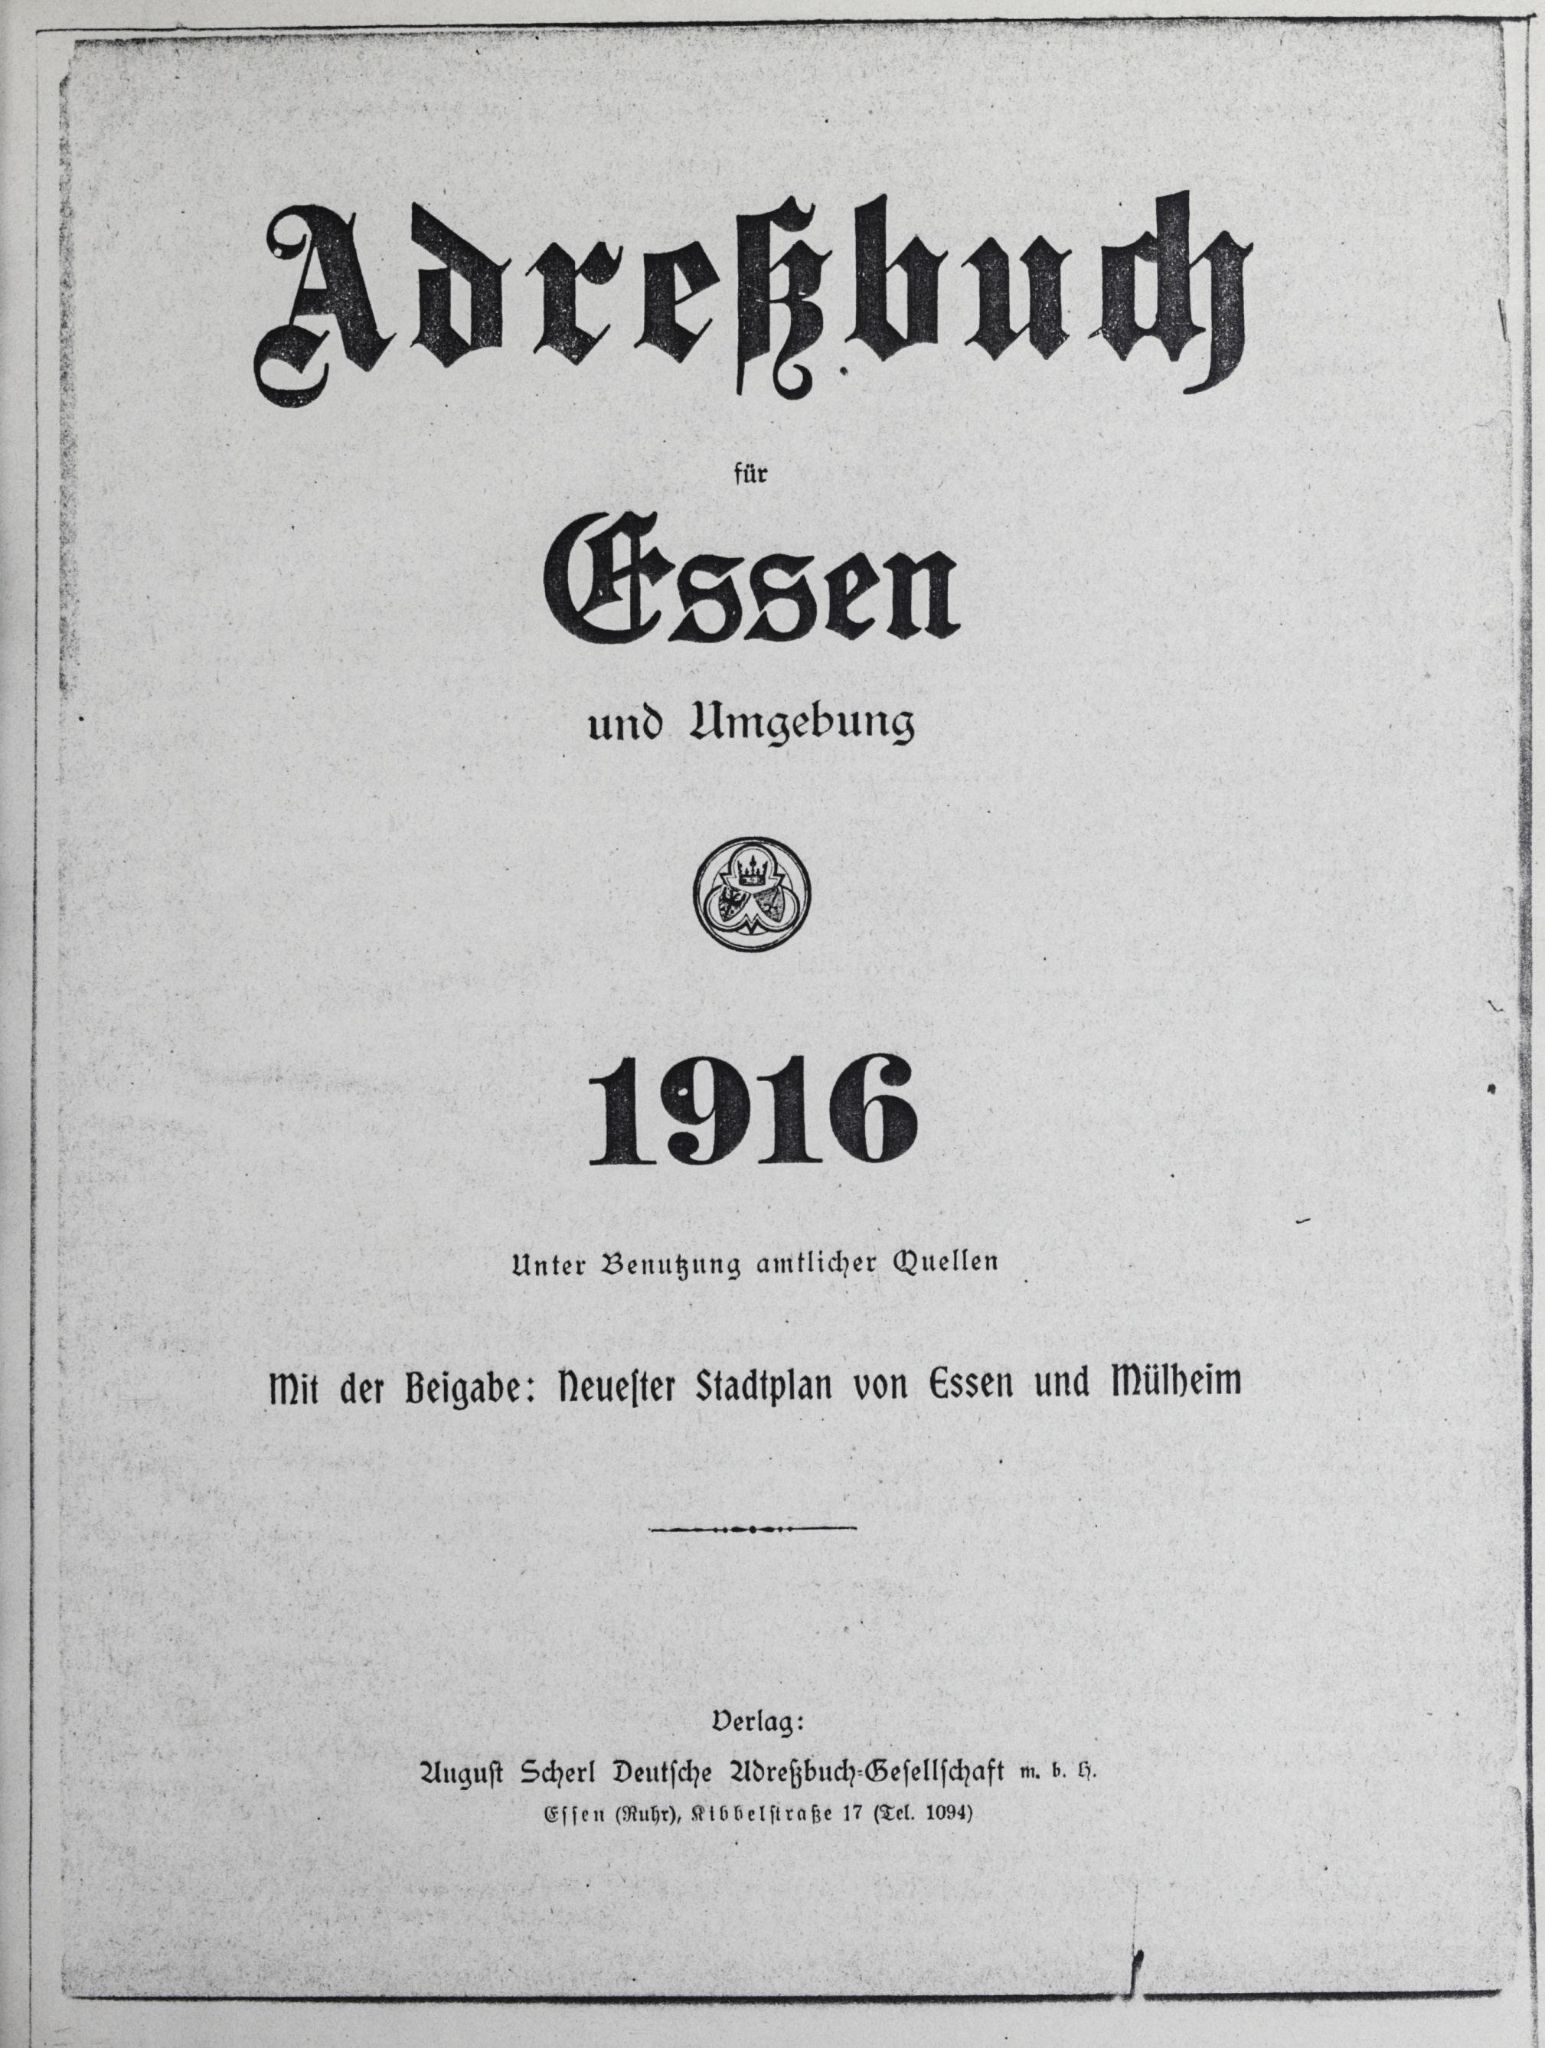 Adreßbuch für Essen und Umgebung 1916